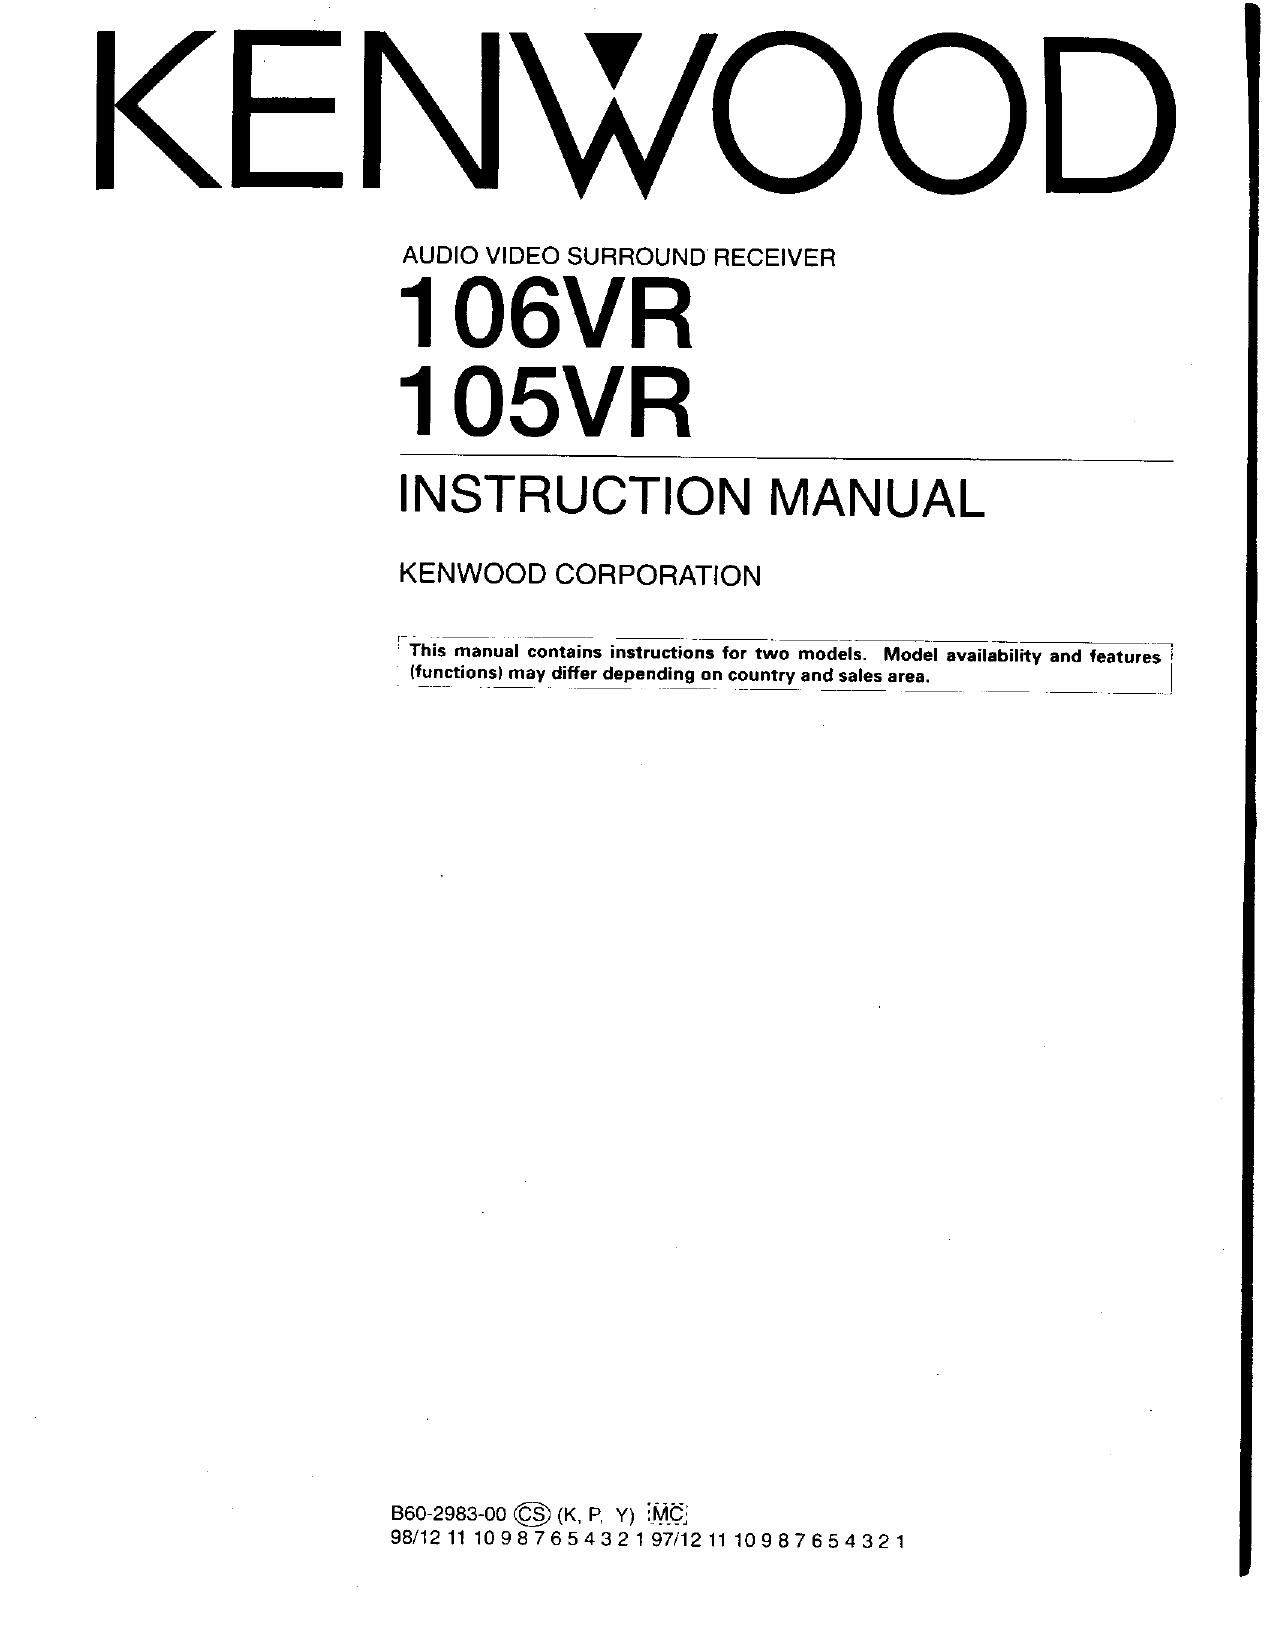 Kenwood 106 VR Owners Manual